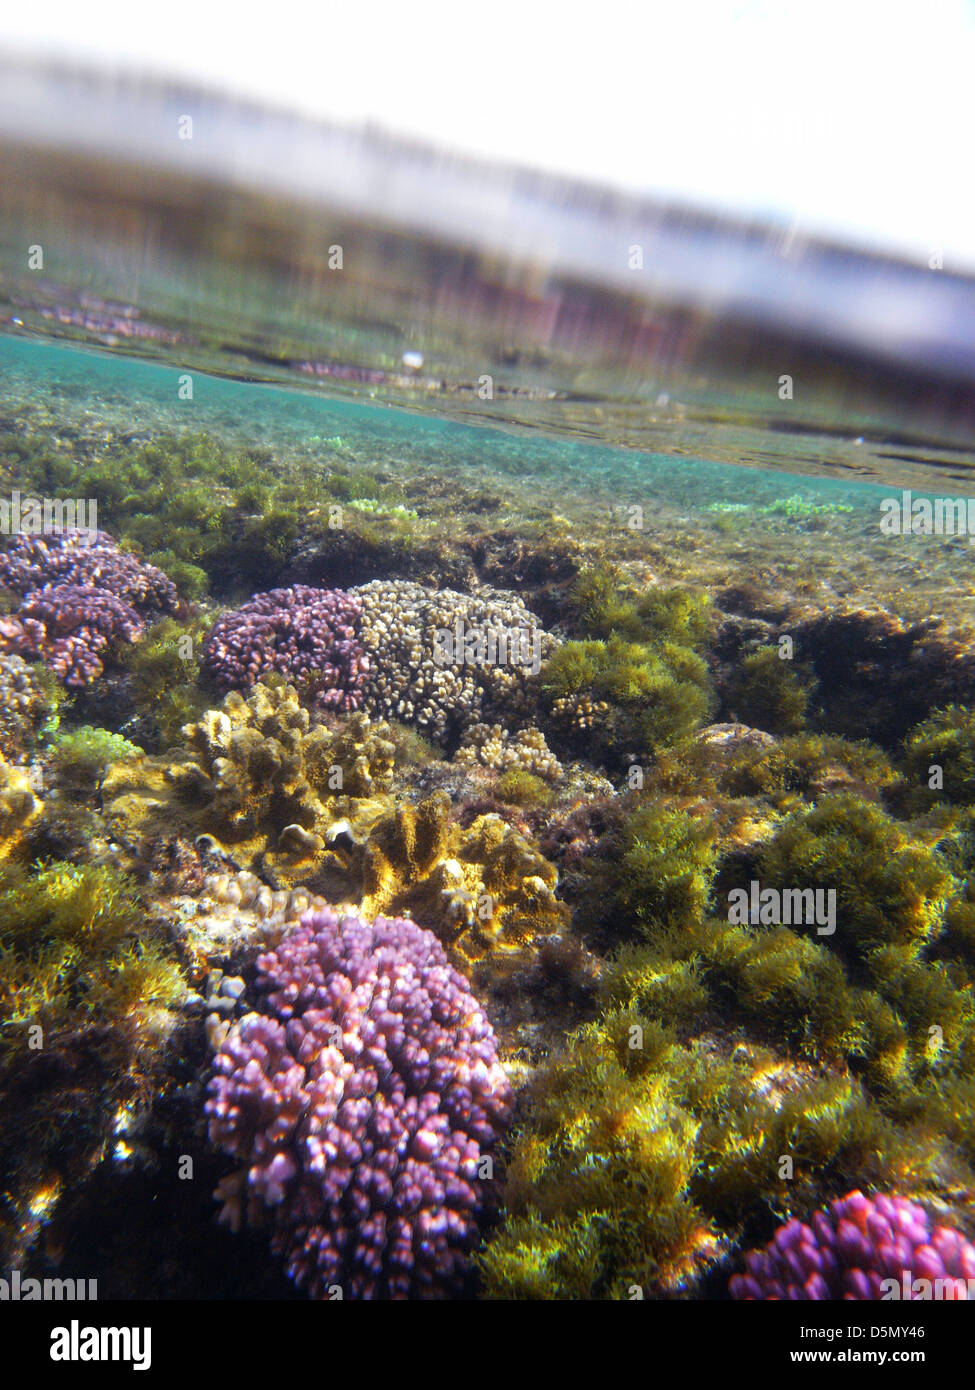 Arrecifes rocosos someros con corales (Pocillopora sp.) y algas que crecen juntas, Oriente Beach, Isla de Lord Howe, Australia Foto de stock